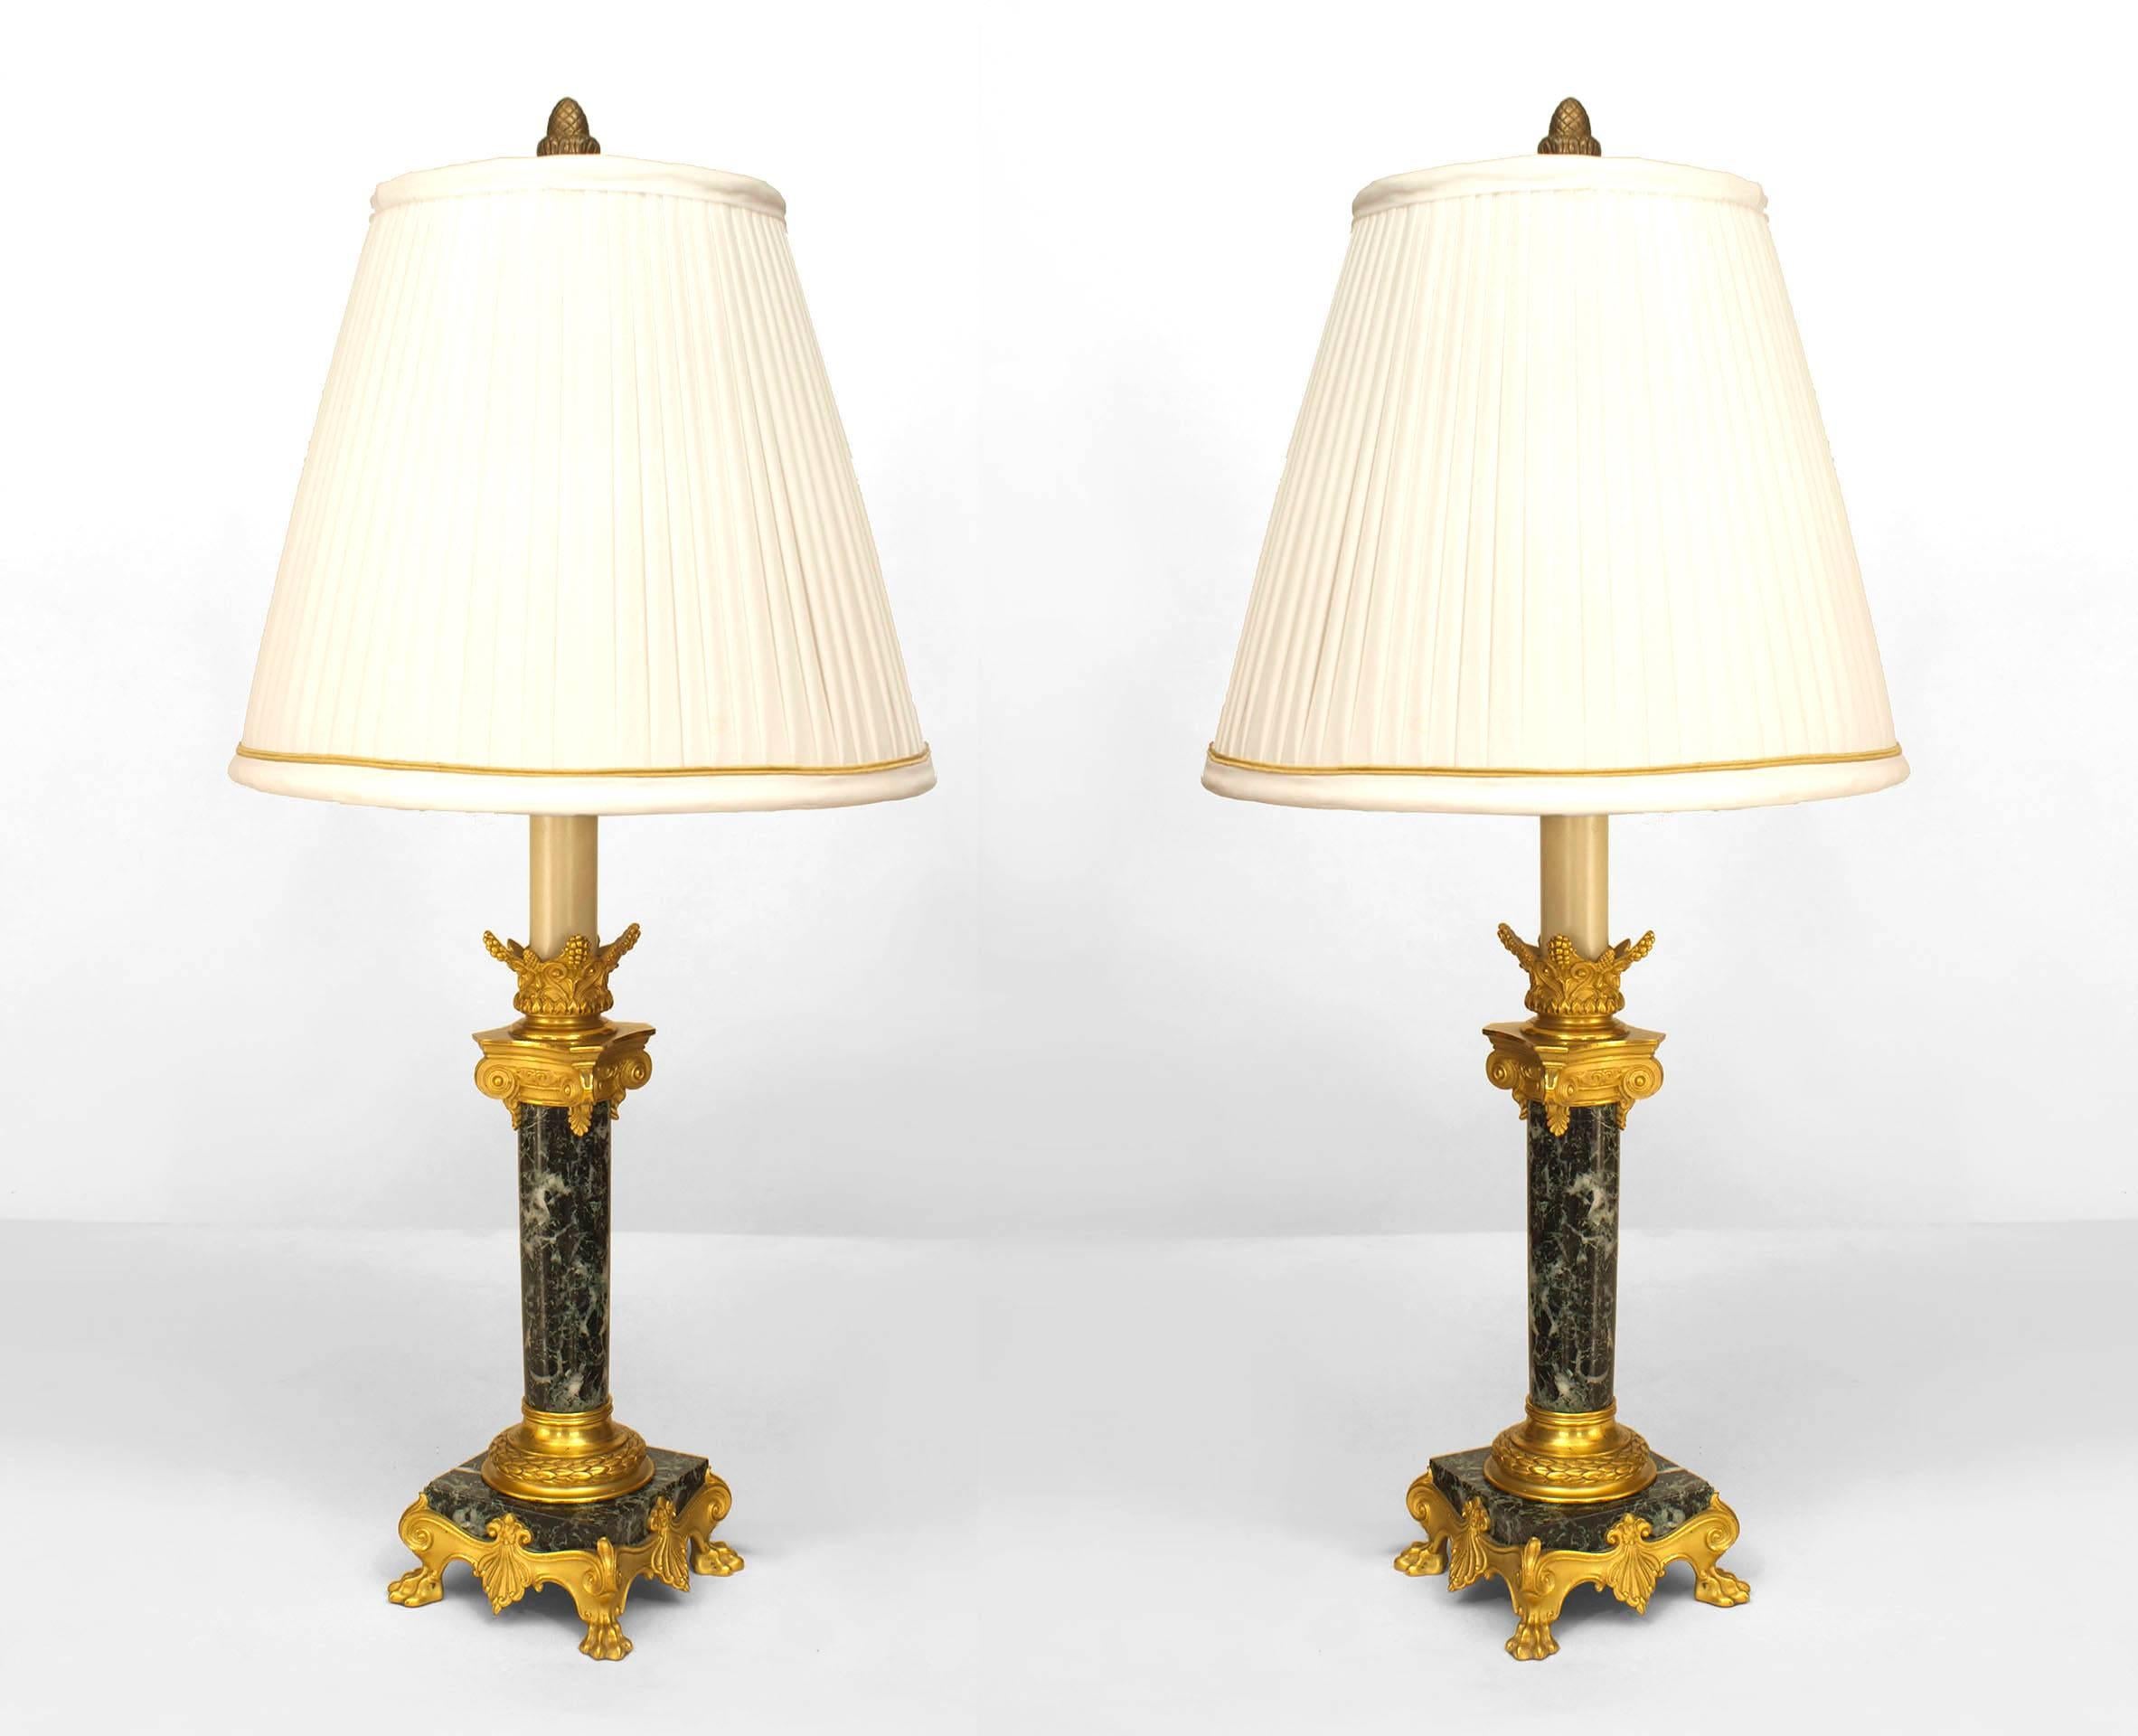 Paar Kerzenleuchter im französischen Empire-Stil (19. Jh.) mit Säule aus grünem Marmor, bronzefarbenem Kapitell und quadratischem Sockel (signiert F. BARBEDIENNE) (PREIS PRO PARE).
